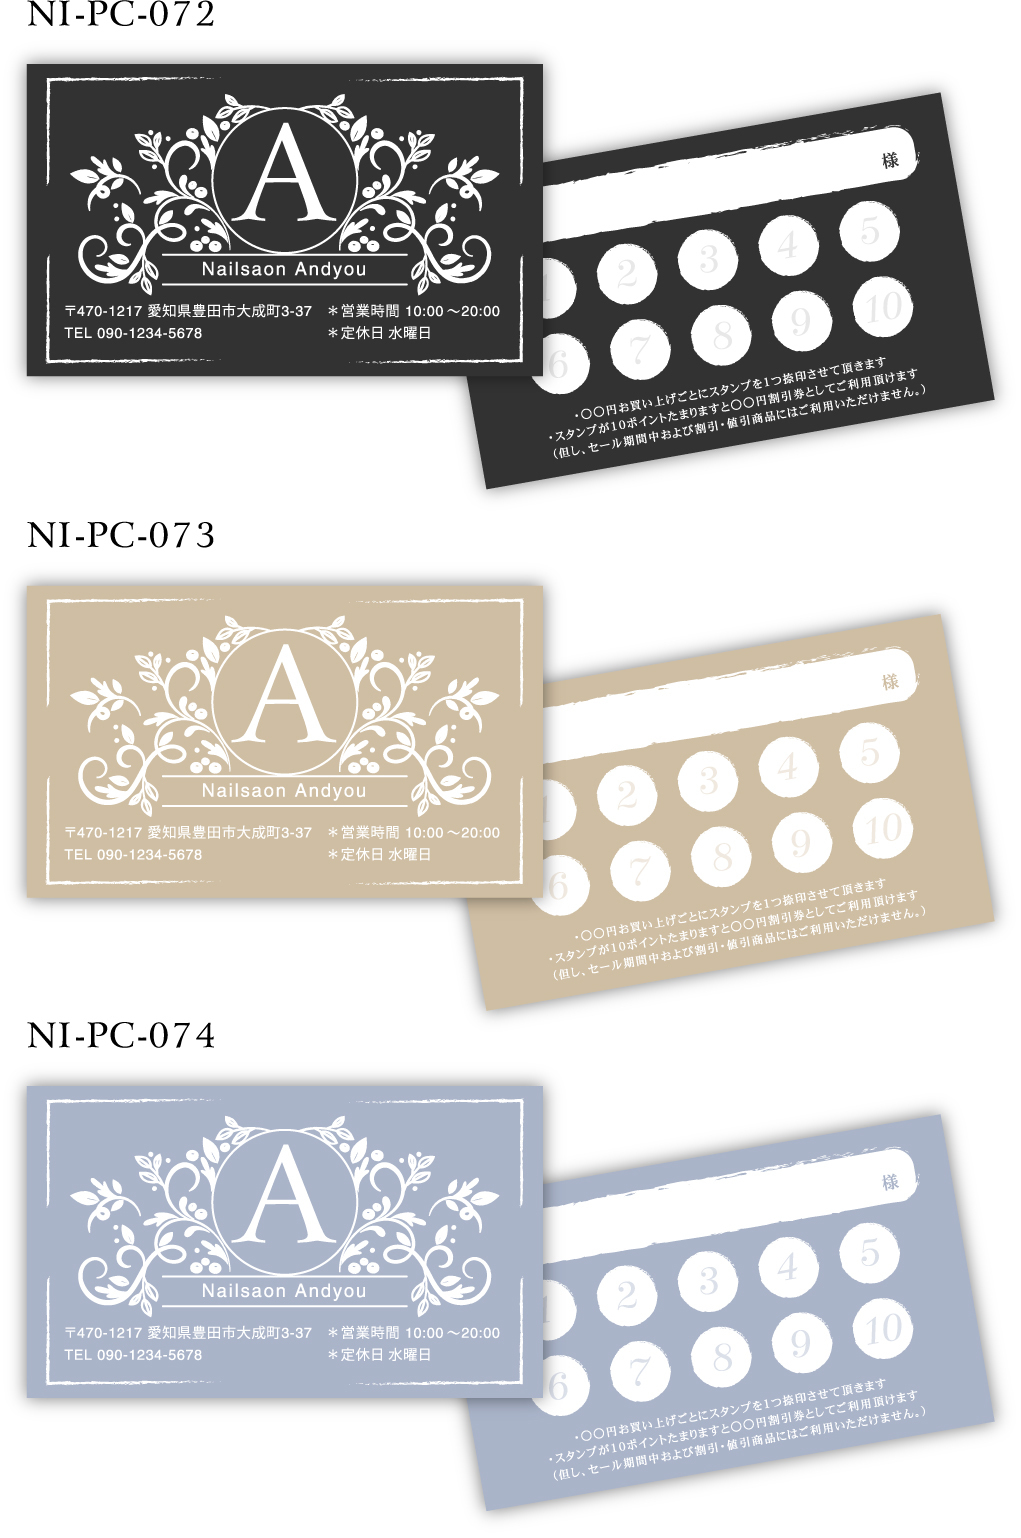 ポイントカード 美容 サロン関係の名刺 ショップカードのデザインをご紹介します